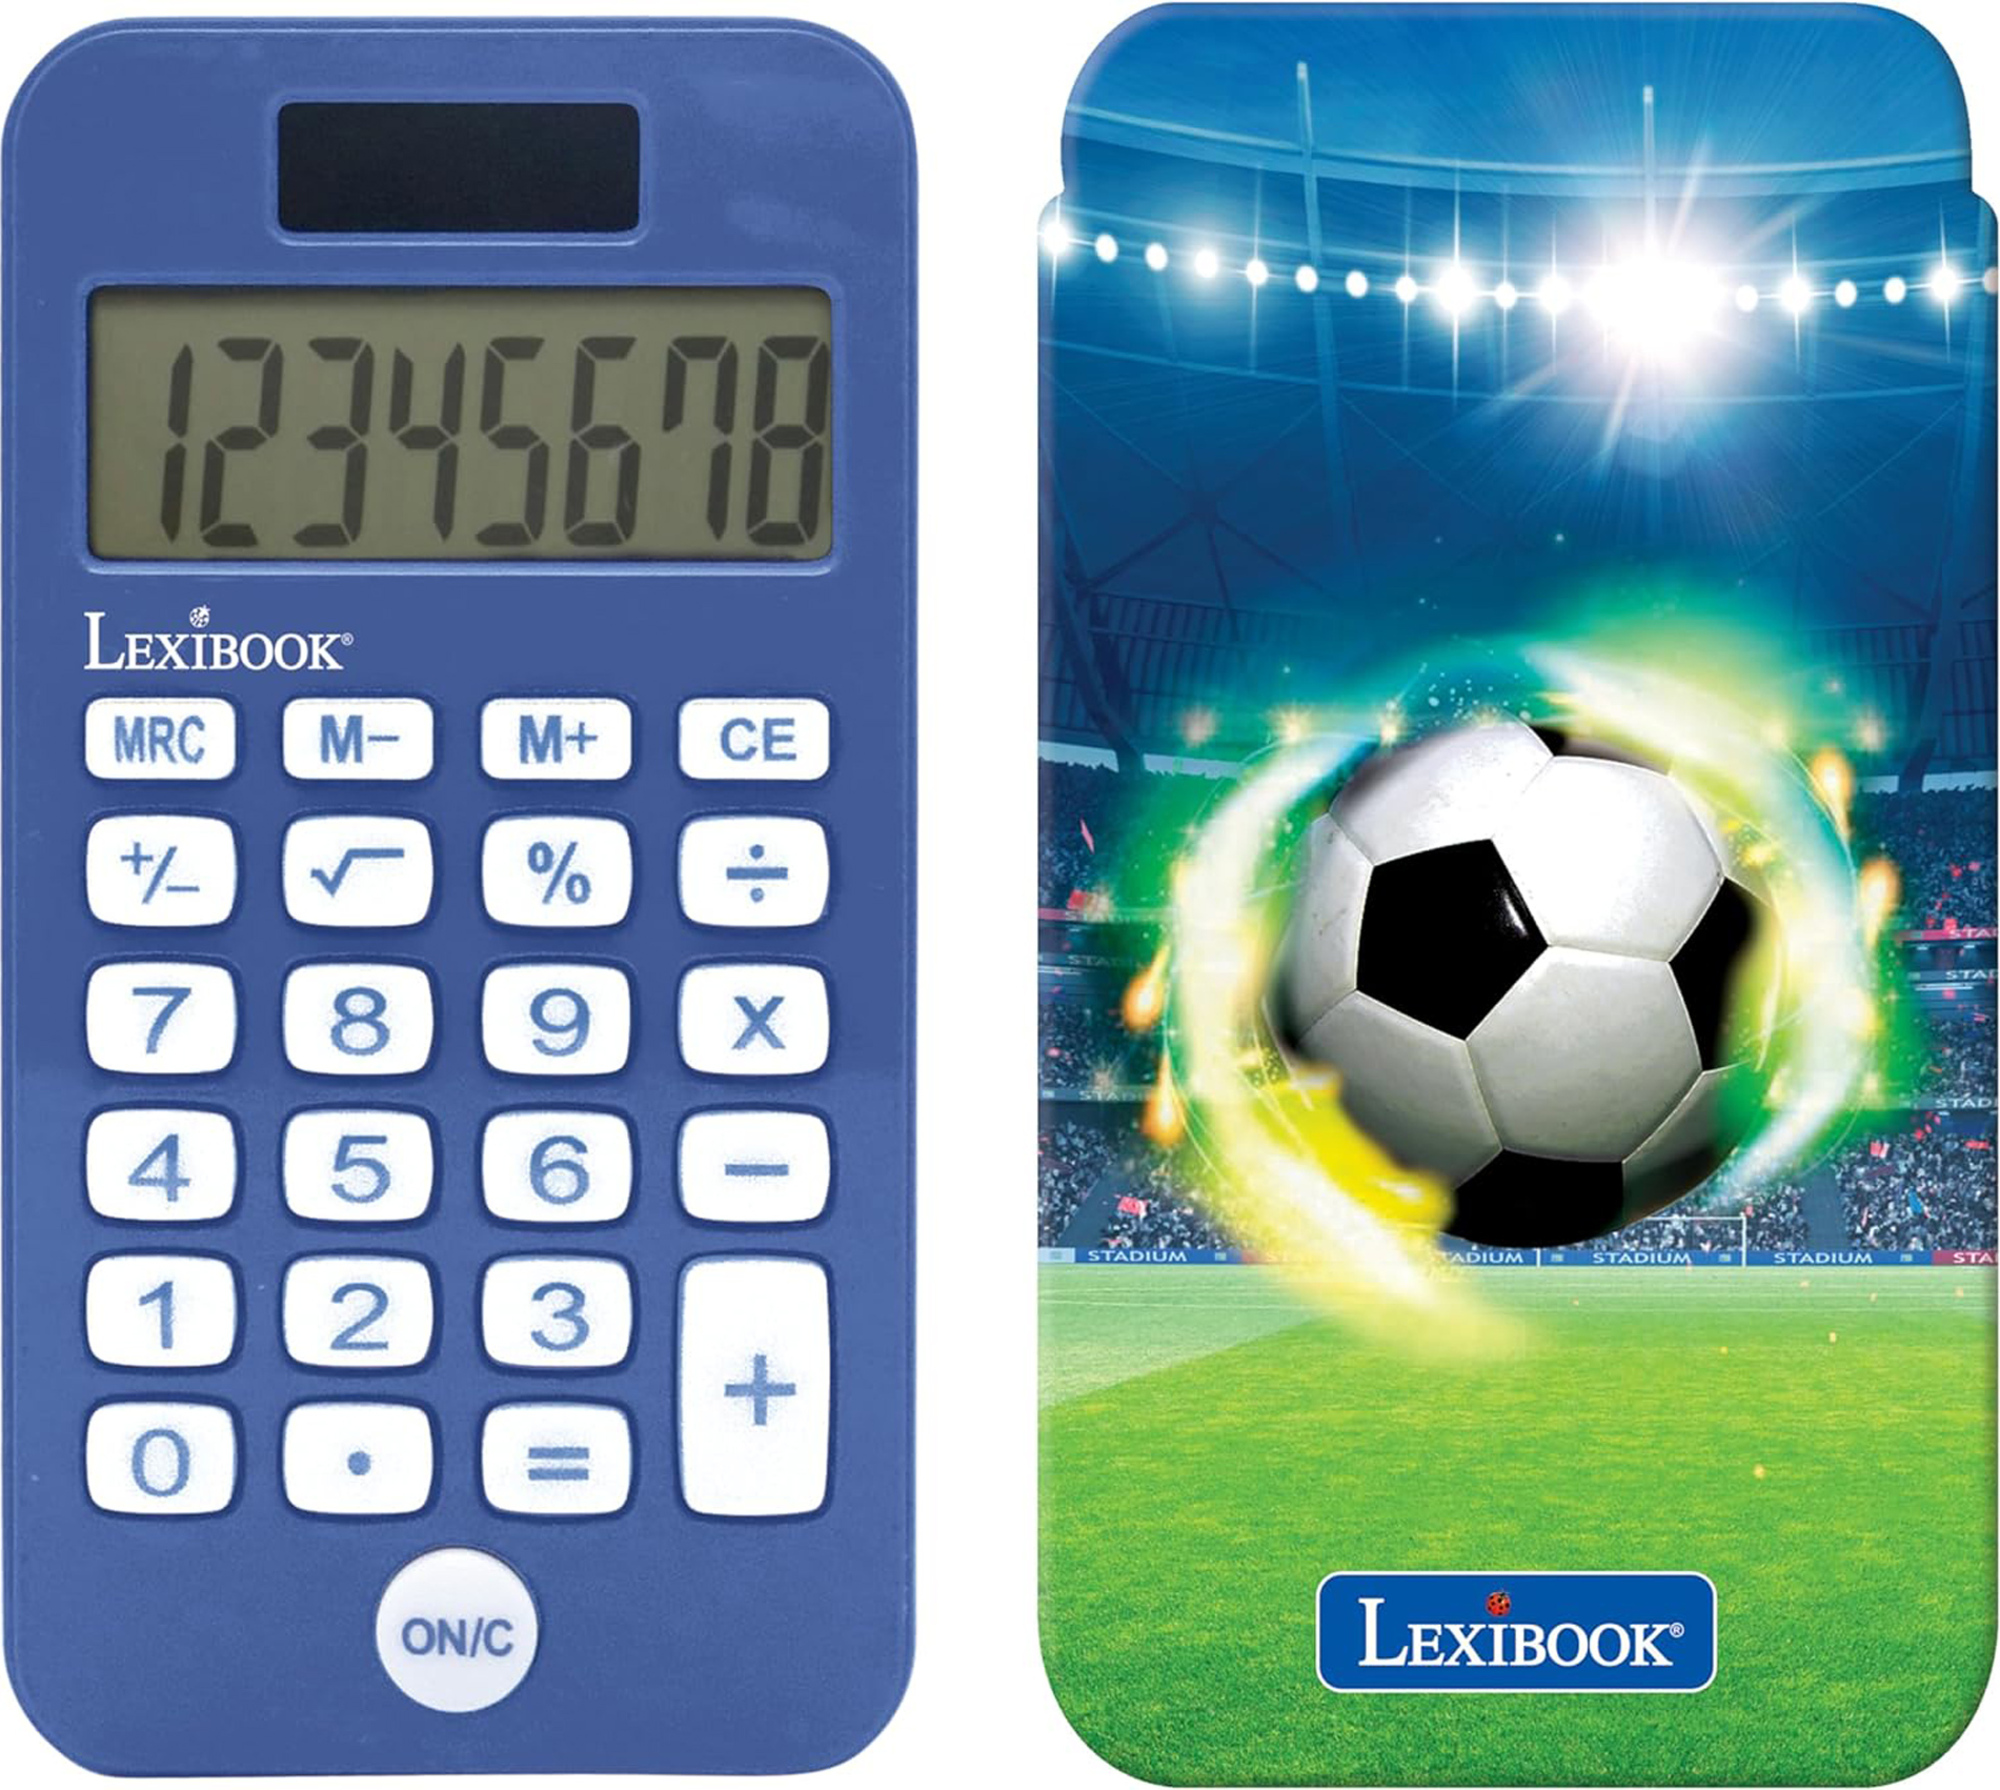 Kapesní kalkulačka Fotbal